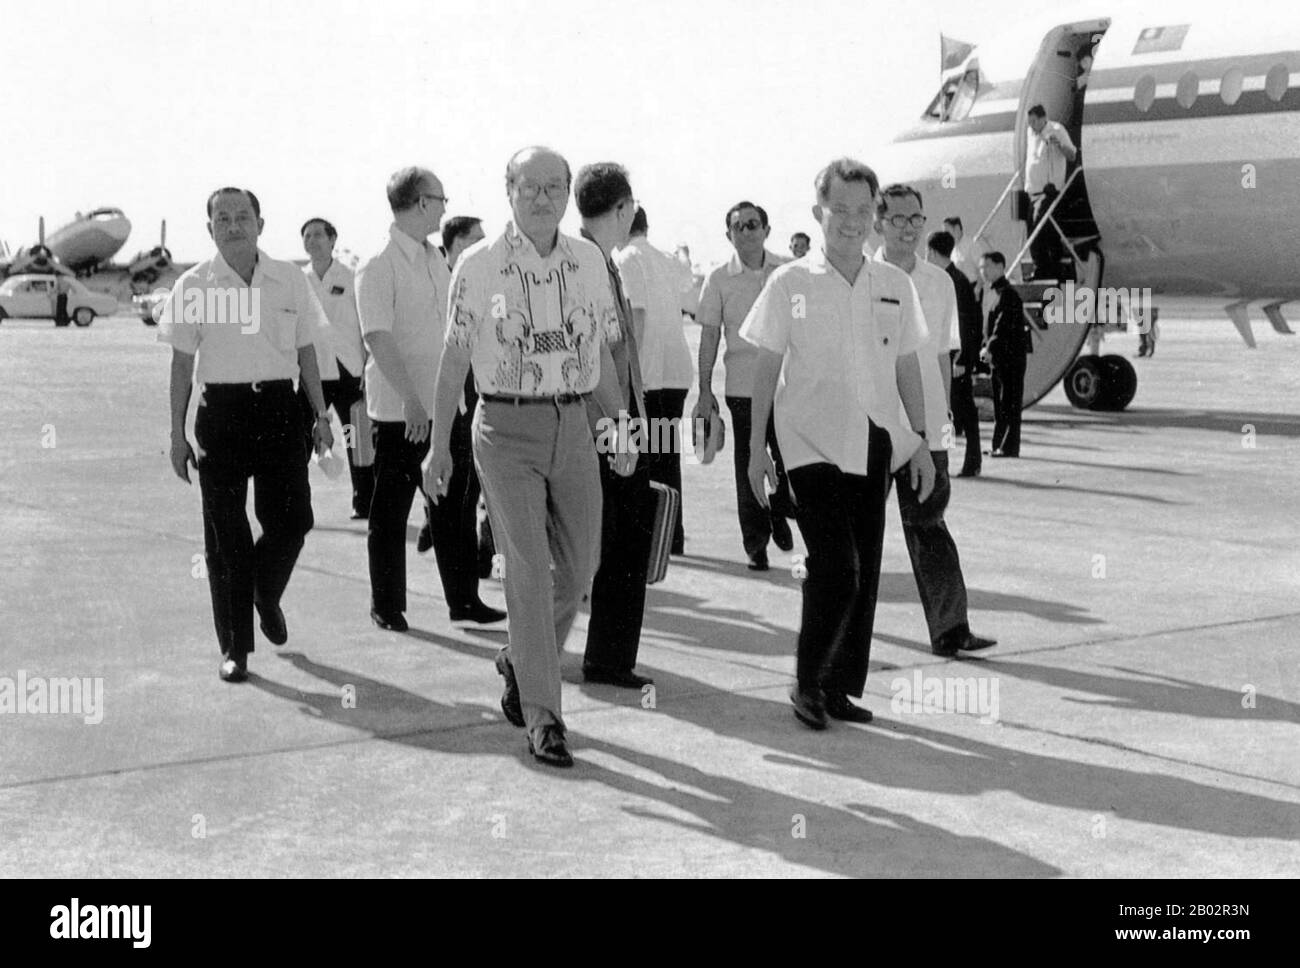 Khieu Samphan (Cambodia, 27 luglio 1931) è stato un . In quanto tale, ha servito come capo di stato della Cambogia ed era uno dei funzionari più potenti nel movimento dei Khmer rossi, anche se Pol Pot era il vero leader politico del gruppo e deteneva il potere più esteso. Ne Win (sopportato il 24 maggio o 14 maggio 1911 o 10 luglio 1910 - 5 dicembre 2002) era un politico e un comandante militare. È stato primo ministro della Birmania dal 1958 al 1960 e dal 1962 al 1974 e anche capo di stato dal 1962 al 1981. Fu anche fondatore e dal 1963 Foto Stock